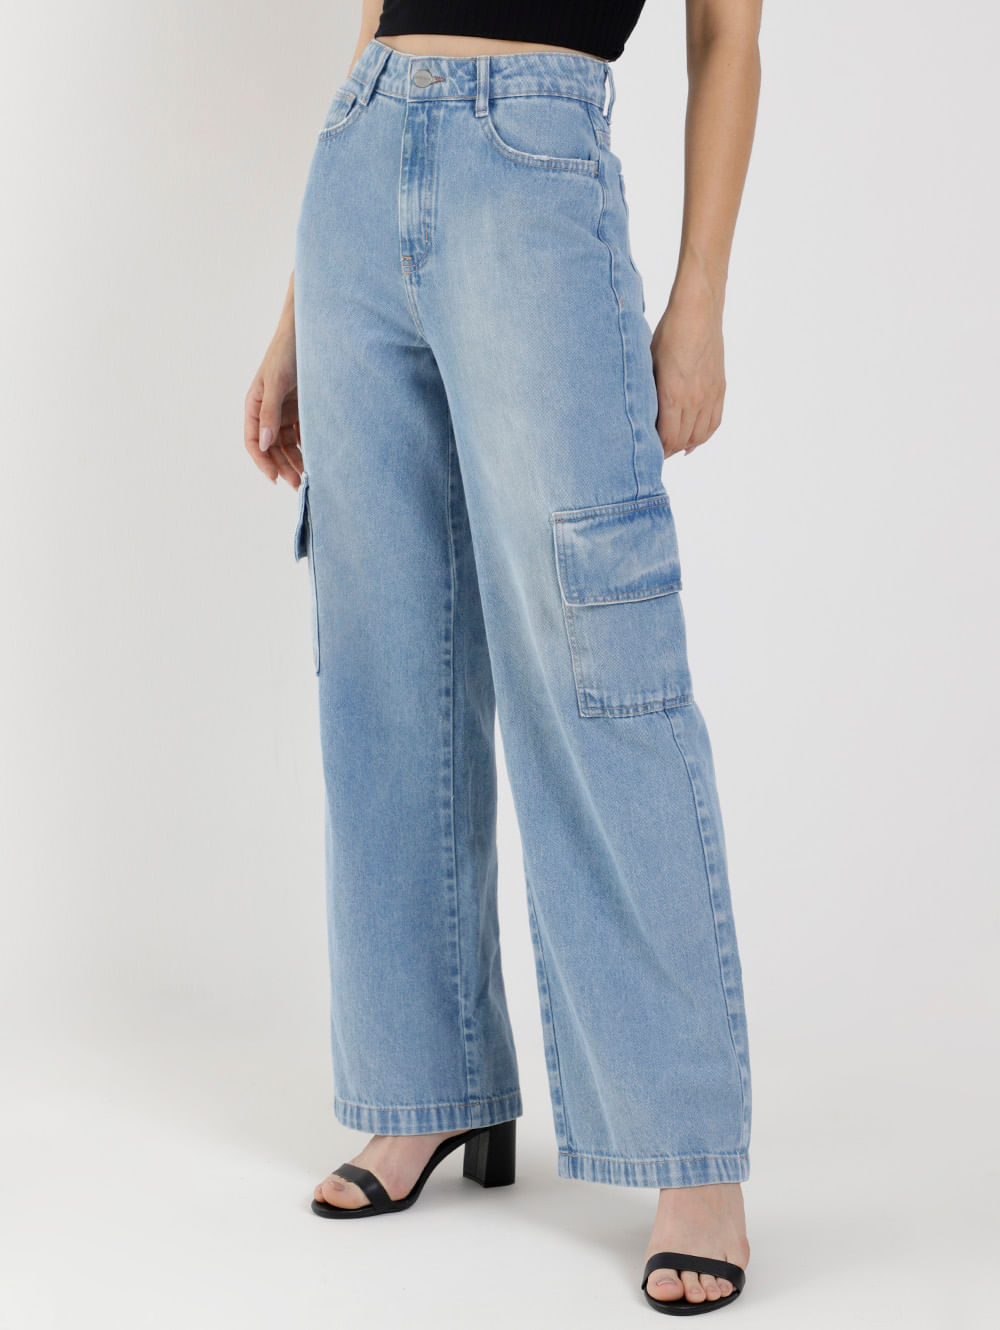 calça jeans cargo feminina para usar com blazer colorido